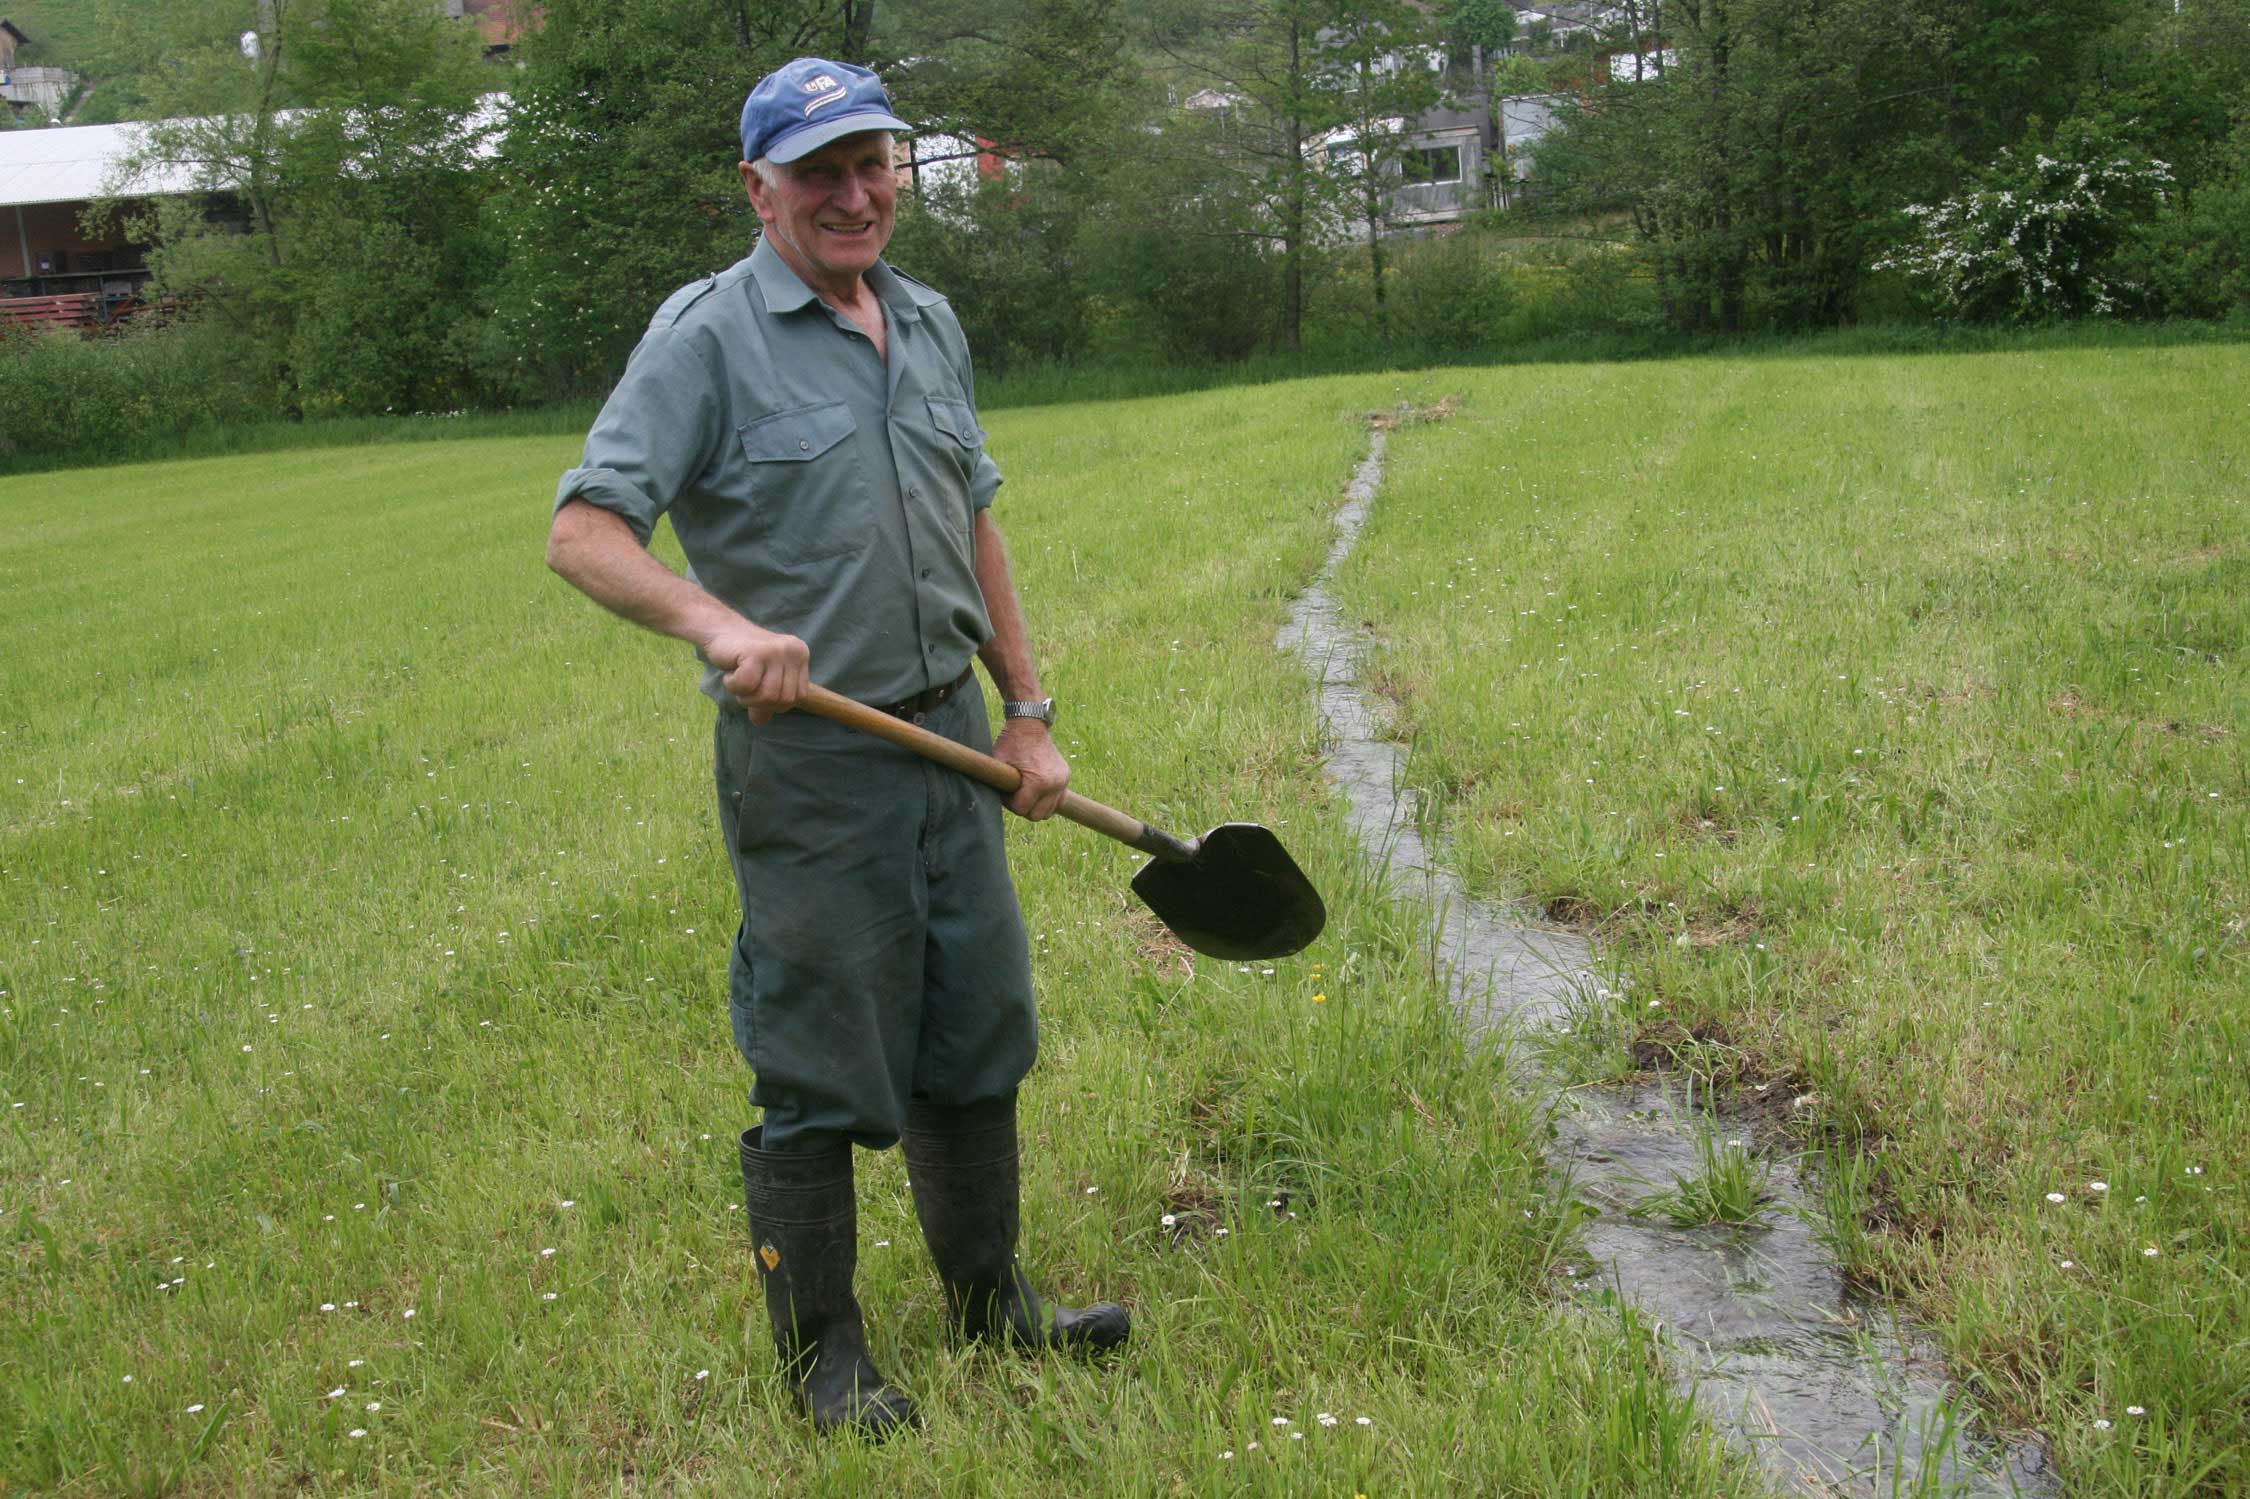 Contadino intento nelle operazioni di irrigazione © Markus Gabarell, 2008